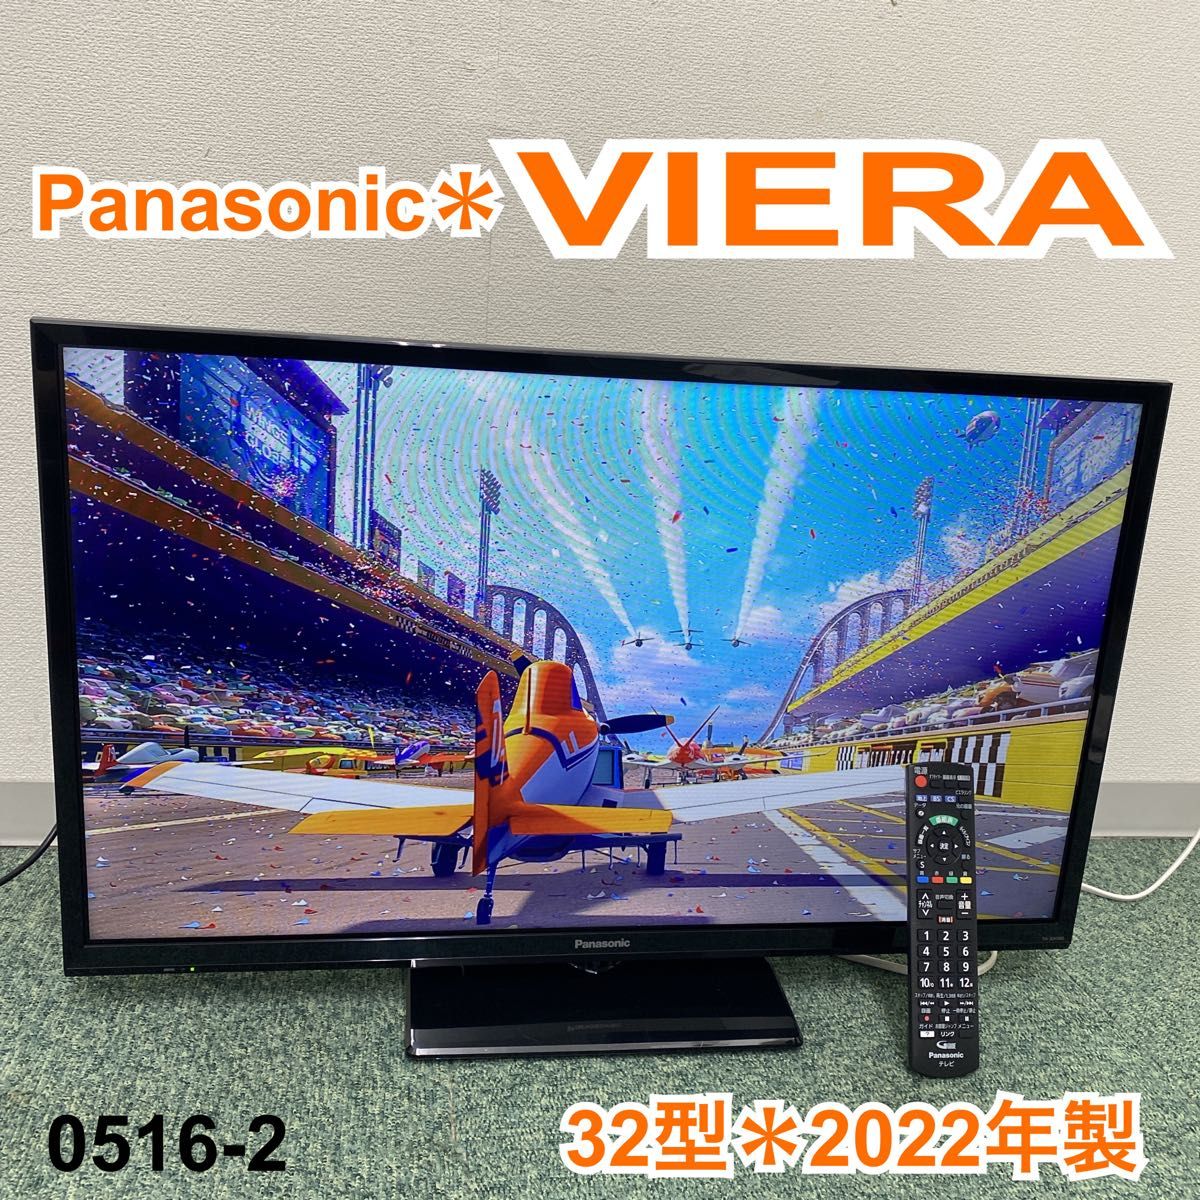 パナソニック 32V型 液晶 テレビ ビエラ TH-32F300 ハイビジョン 2018年モデル(品)